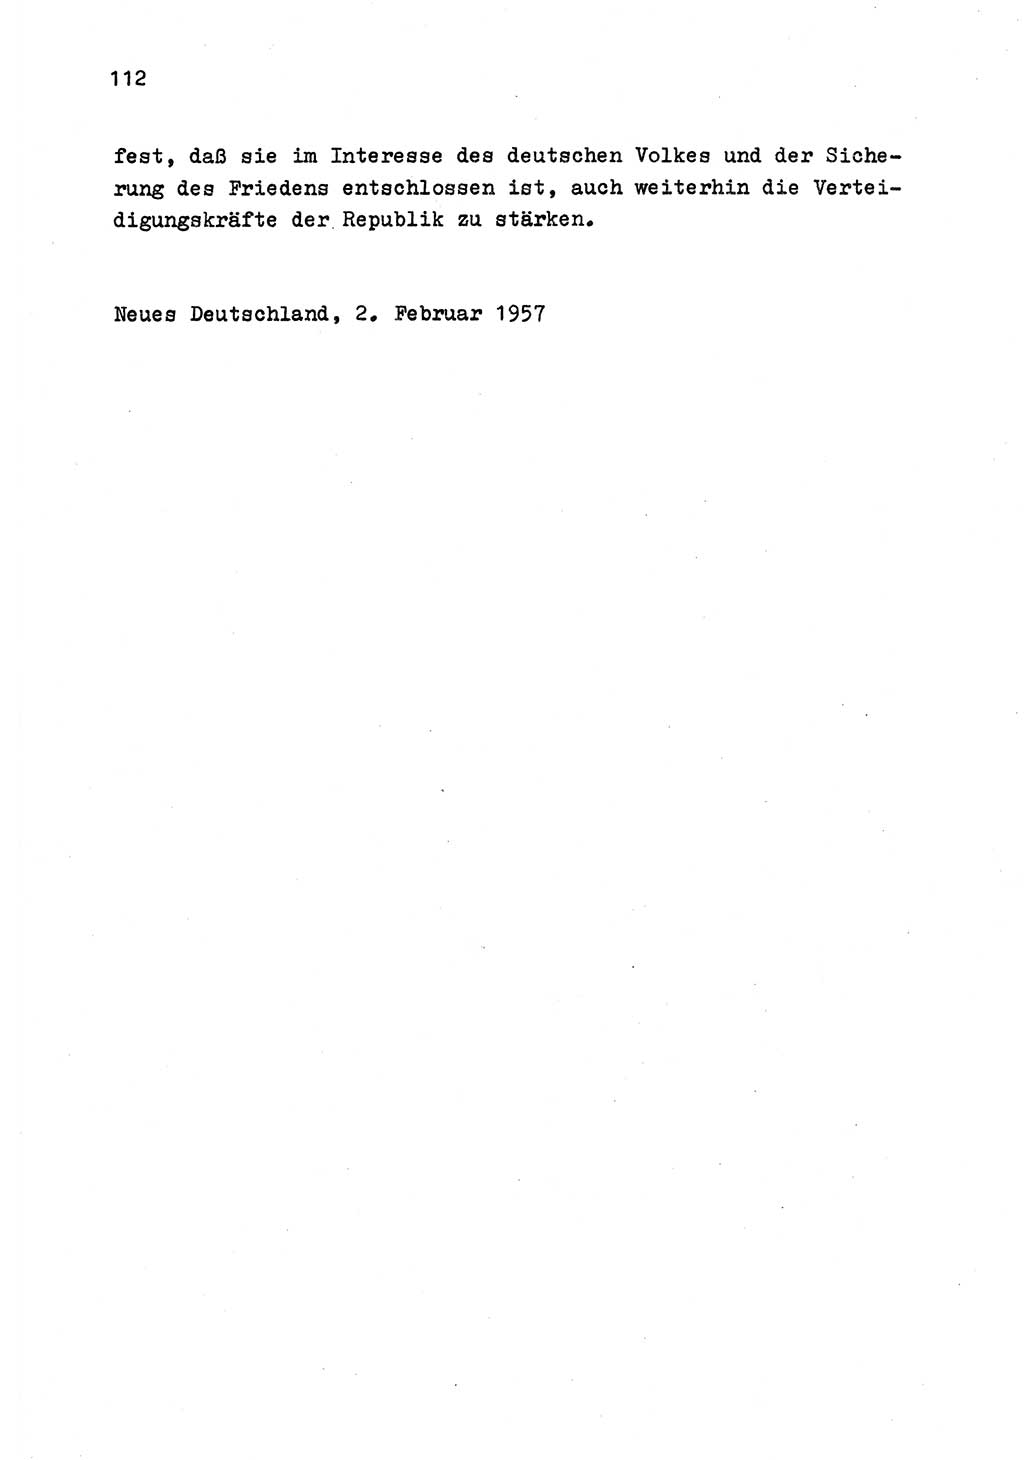 Zu Fragen der Parteiarbeit [Sozialistische Einheitspartei Deutschlands (SED) Deutsche Demokratische Republik (DDR)] 1979, Seite 112 (Fr. PA SED DDR 1979, S. 112)